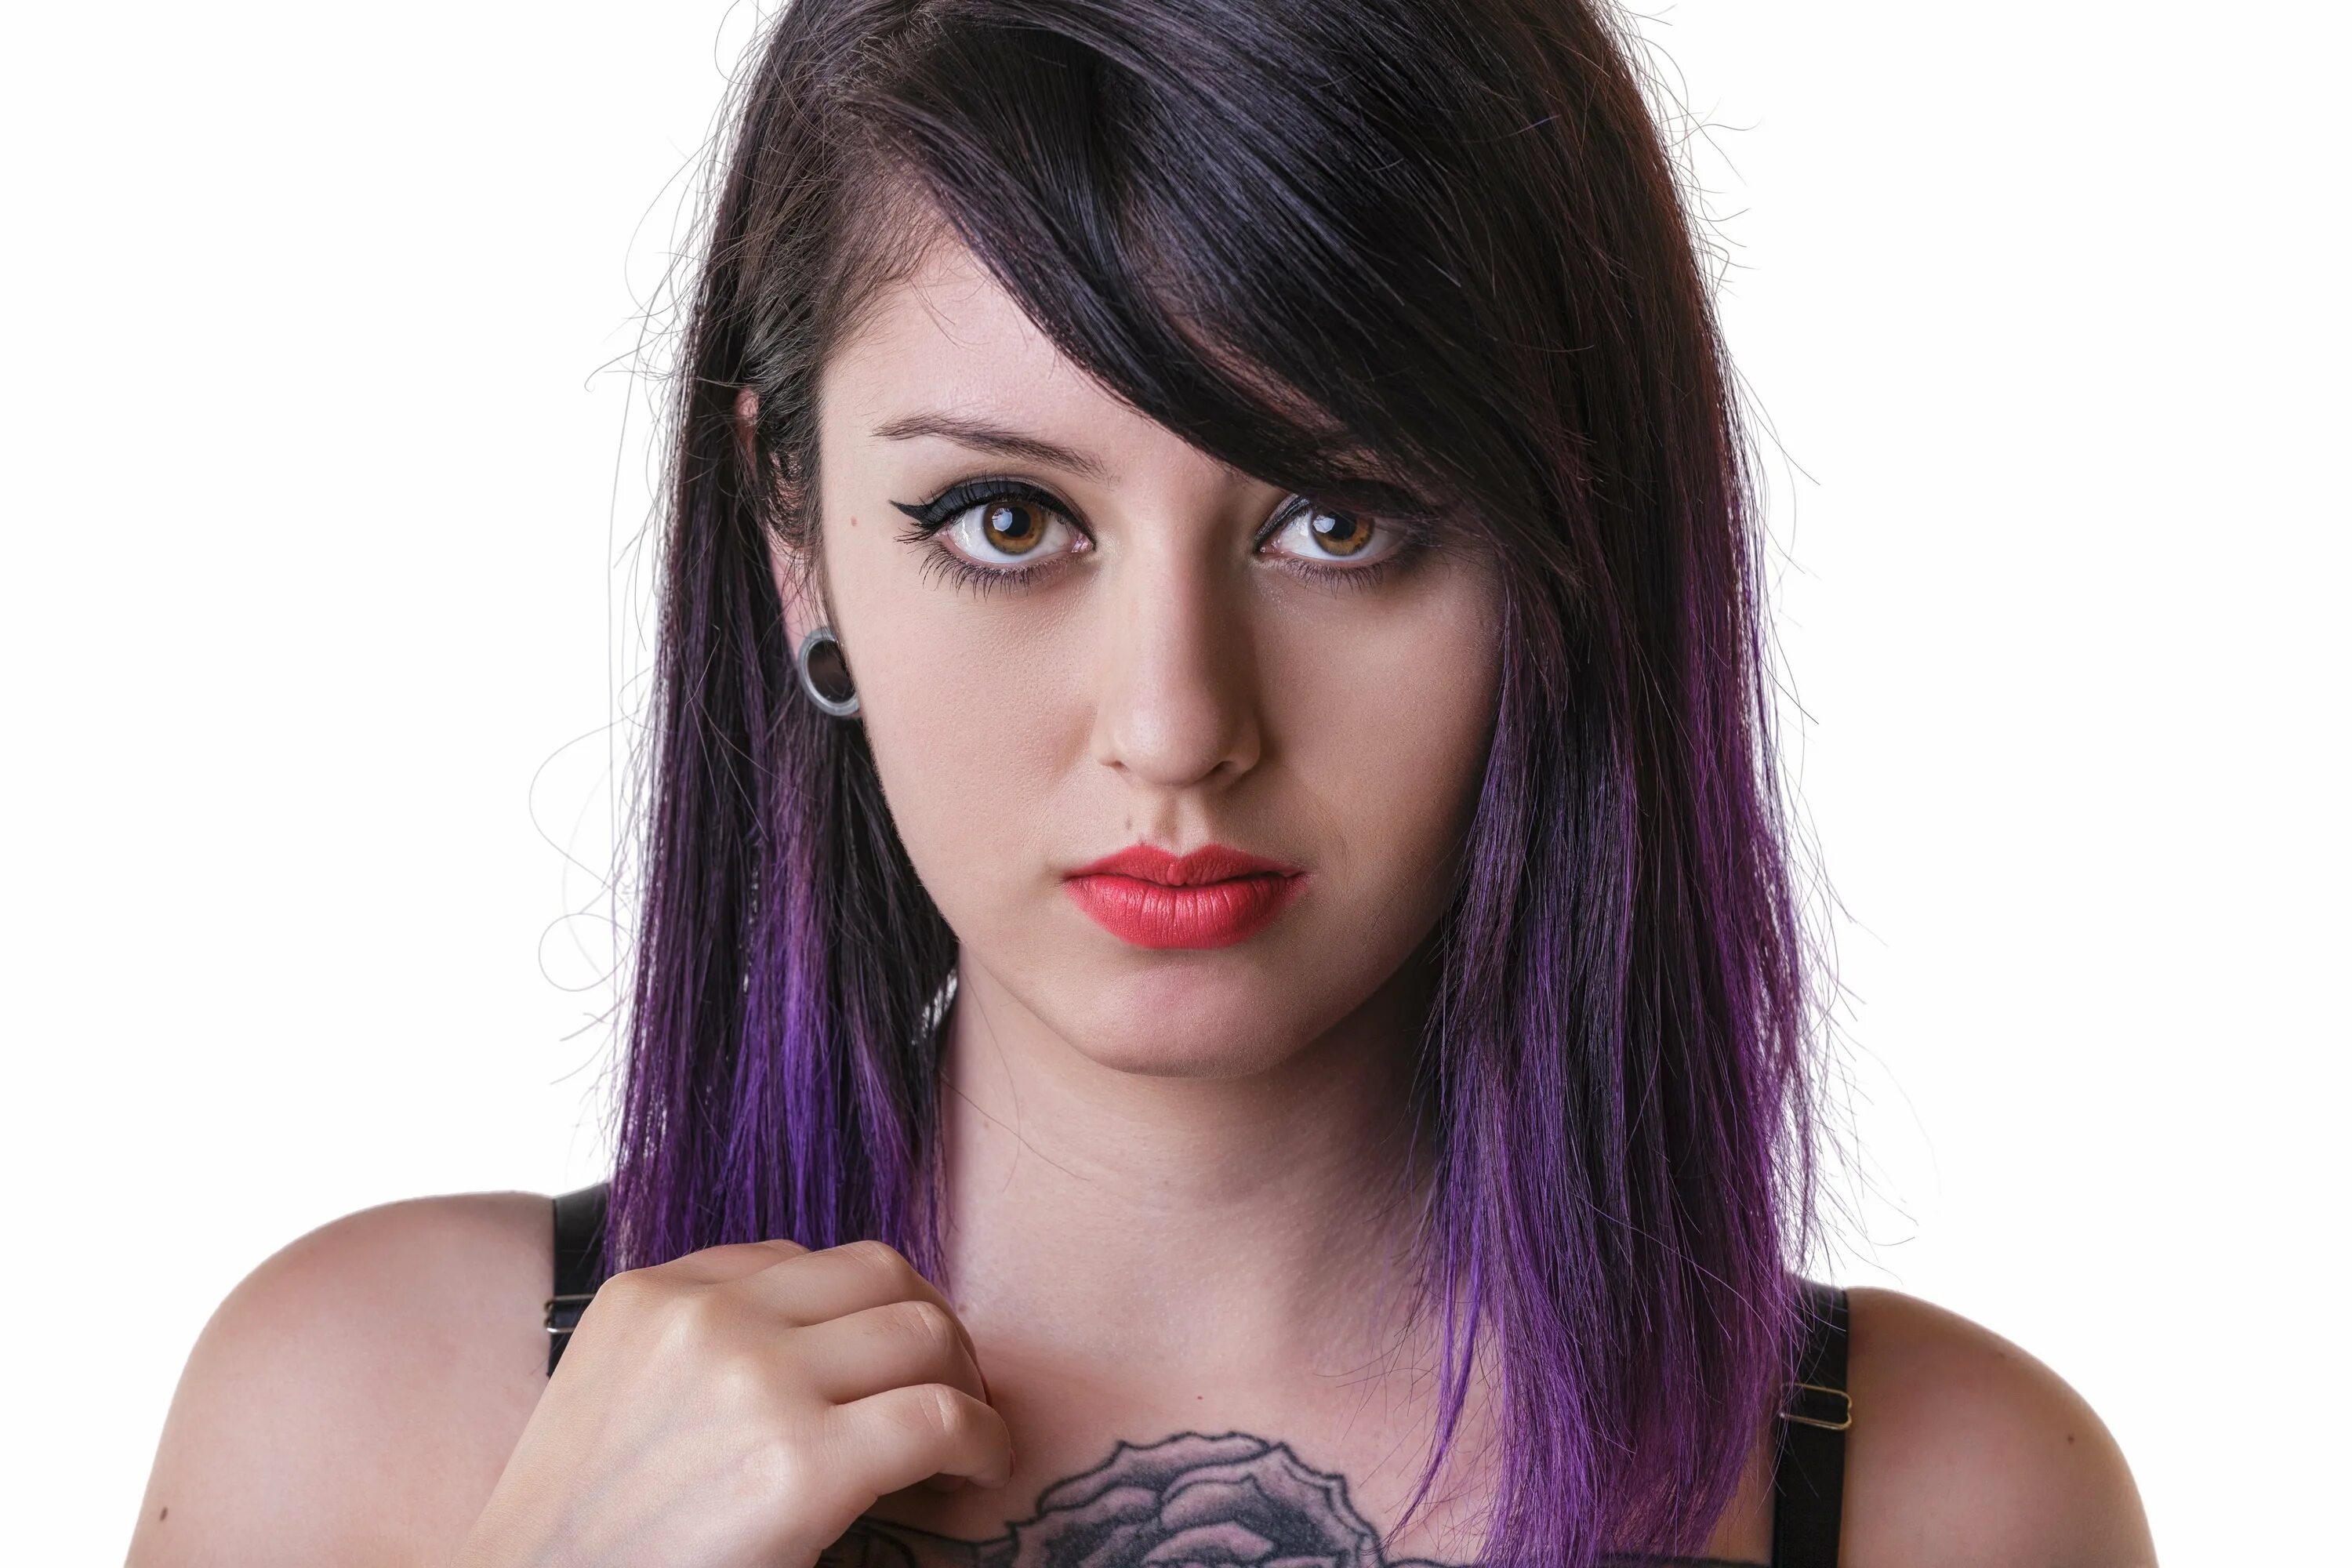 Прядь на лбу. Яркие пряди. Девушка с сиреневыми волосами. Фиолетовые пряди на темных волосах.